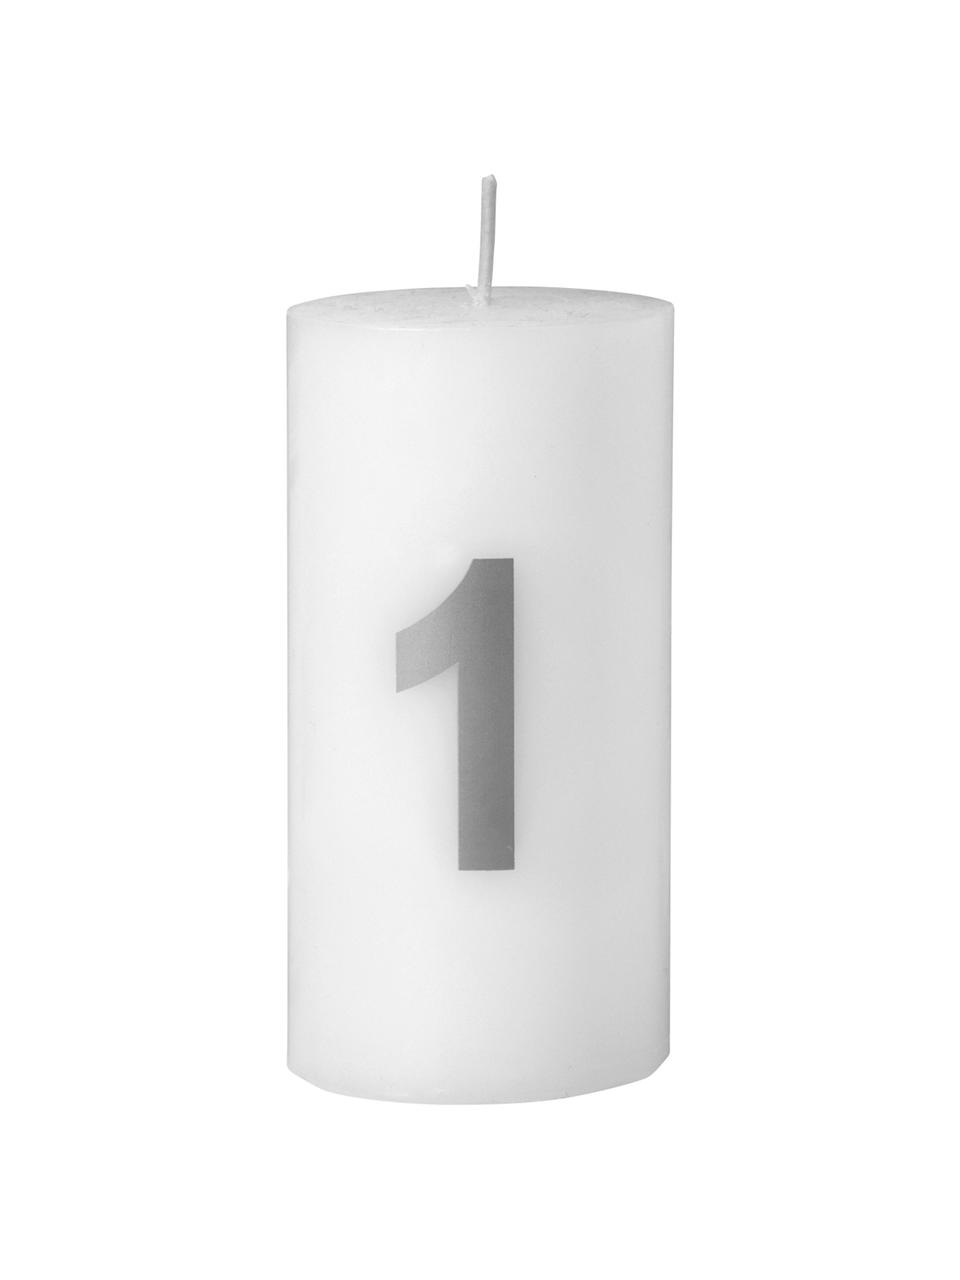 Sada adventních svíček Avvento, 4 díly, Bílá, stříbrná